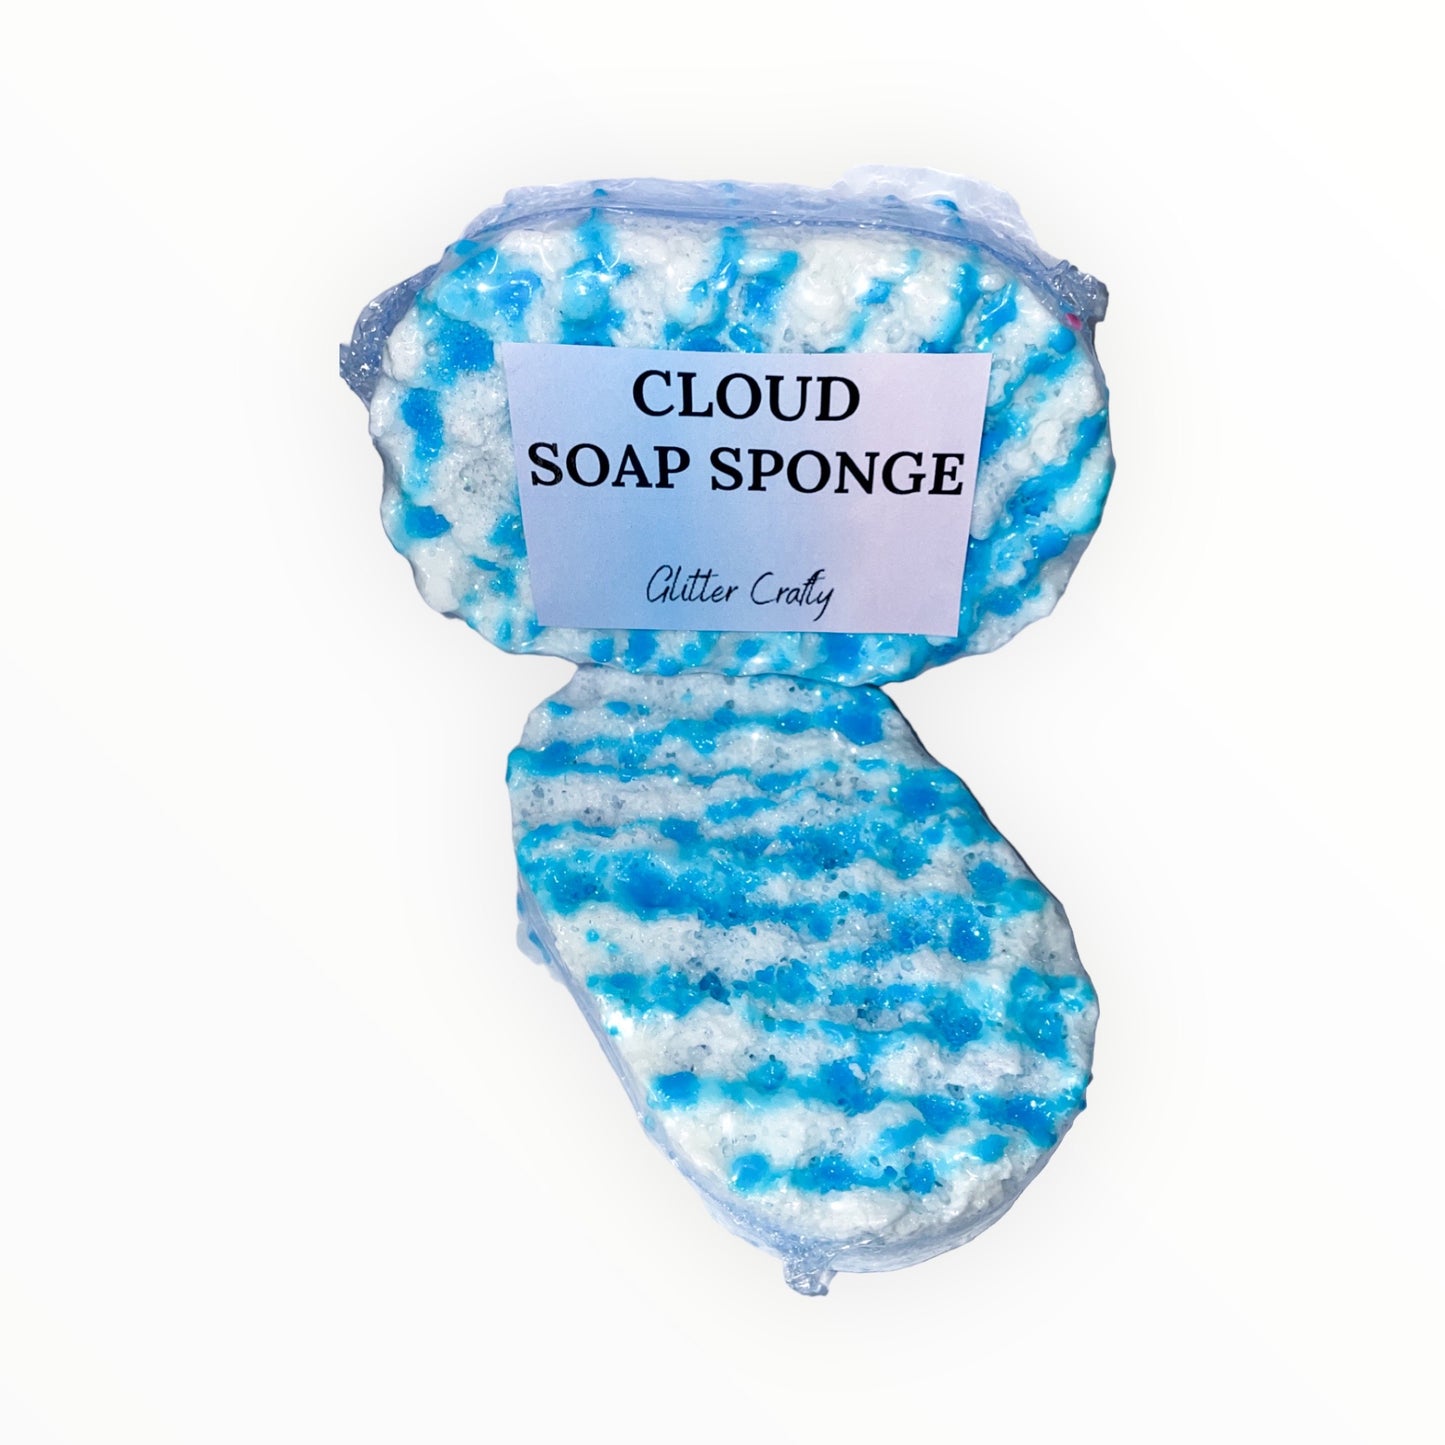 soap sponges